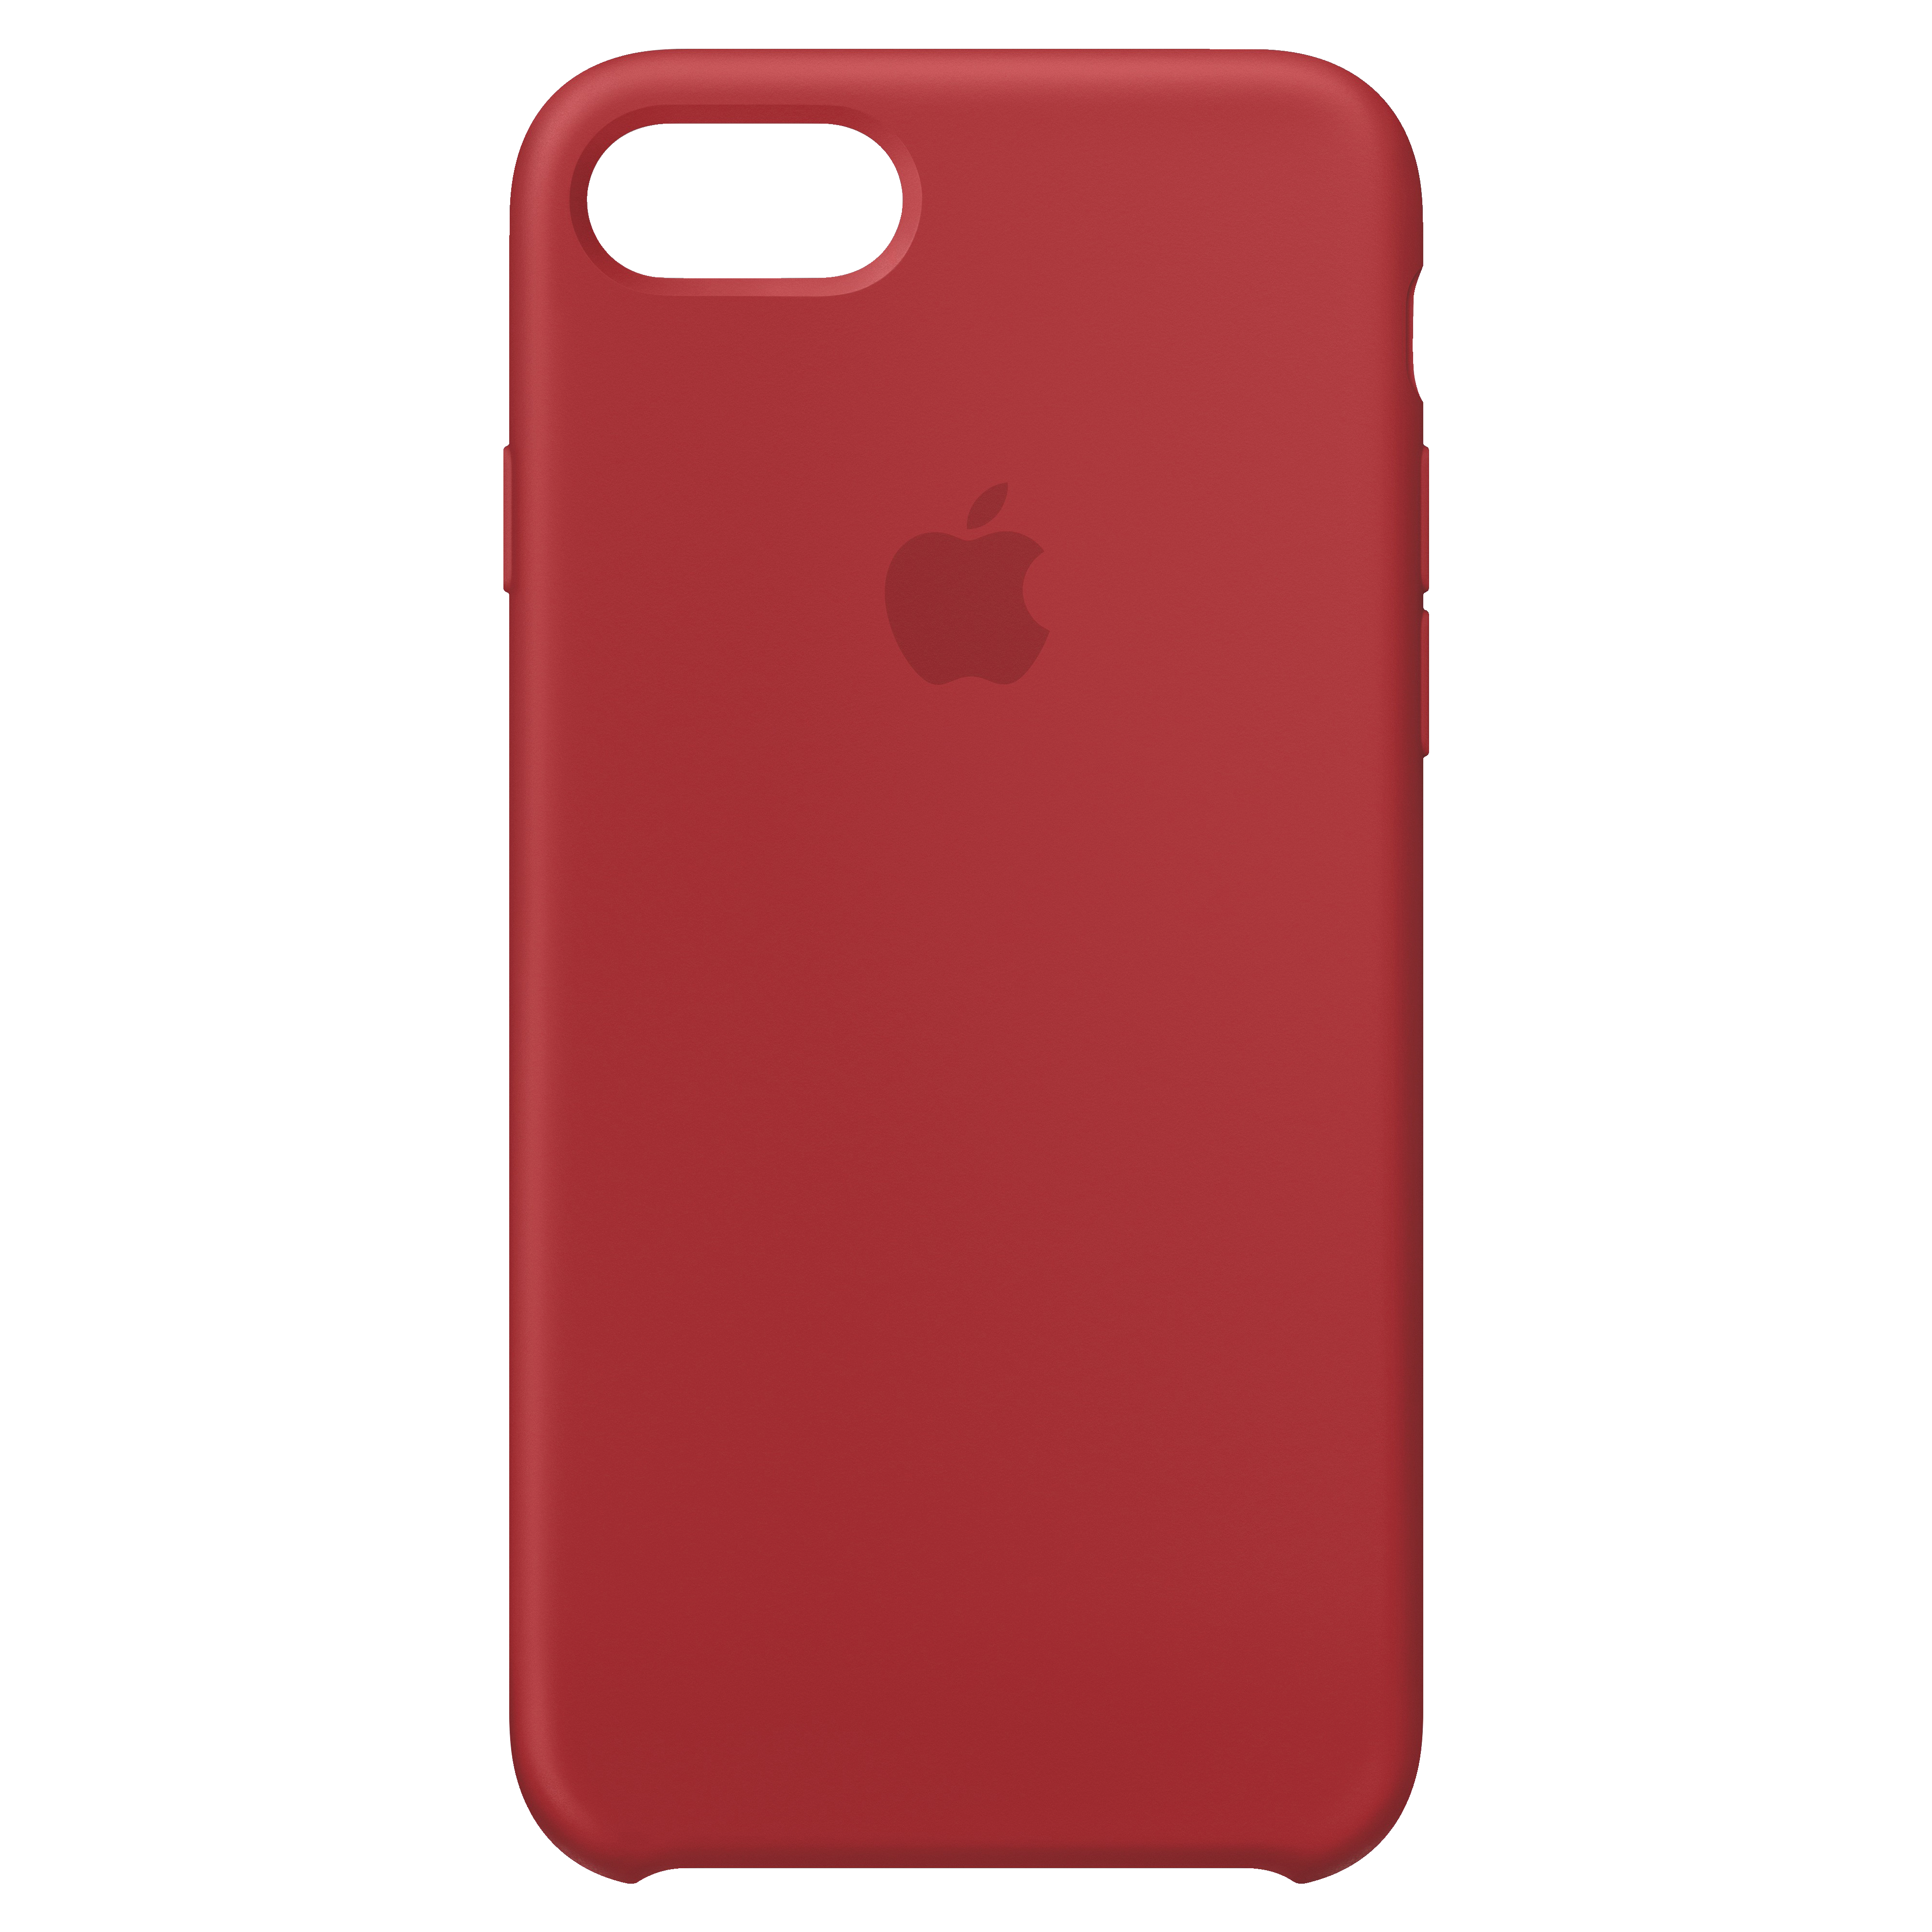 Iphone 8/SE silikonfodral (röd) - Skal och Fodral - Elgiganten